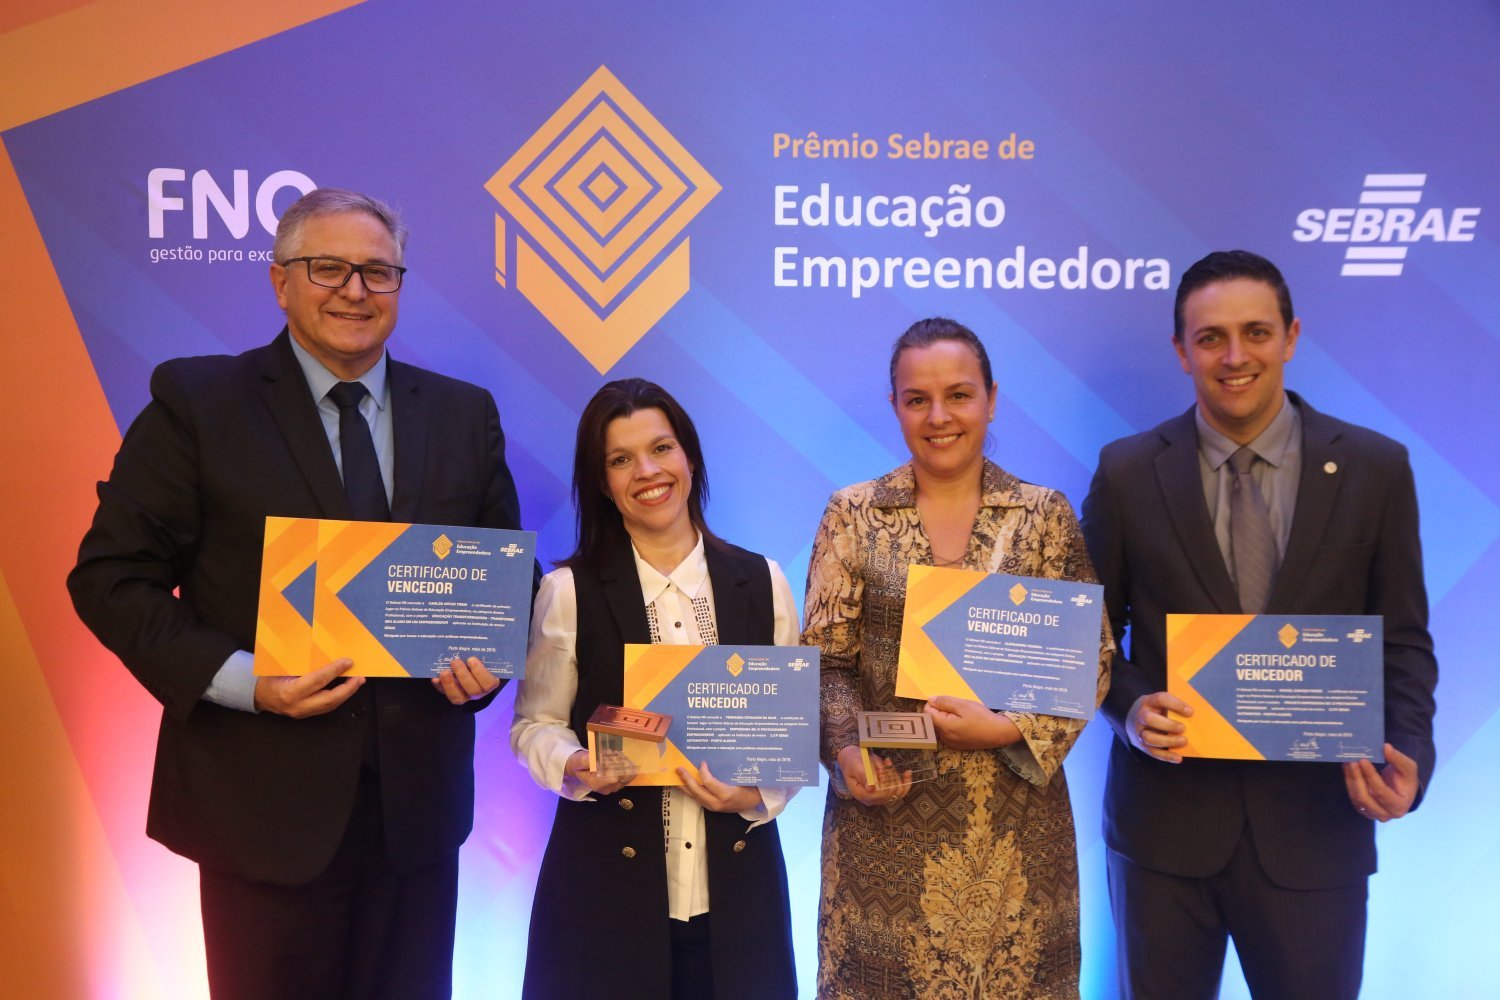 Prêmio Sebrae de Educação Empreendedora